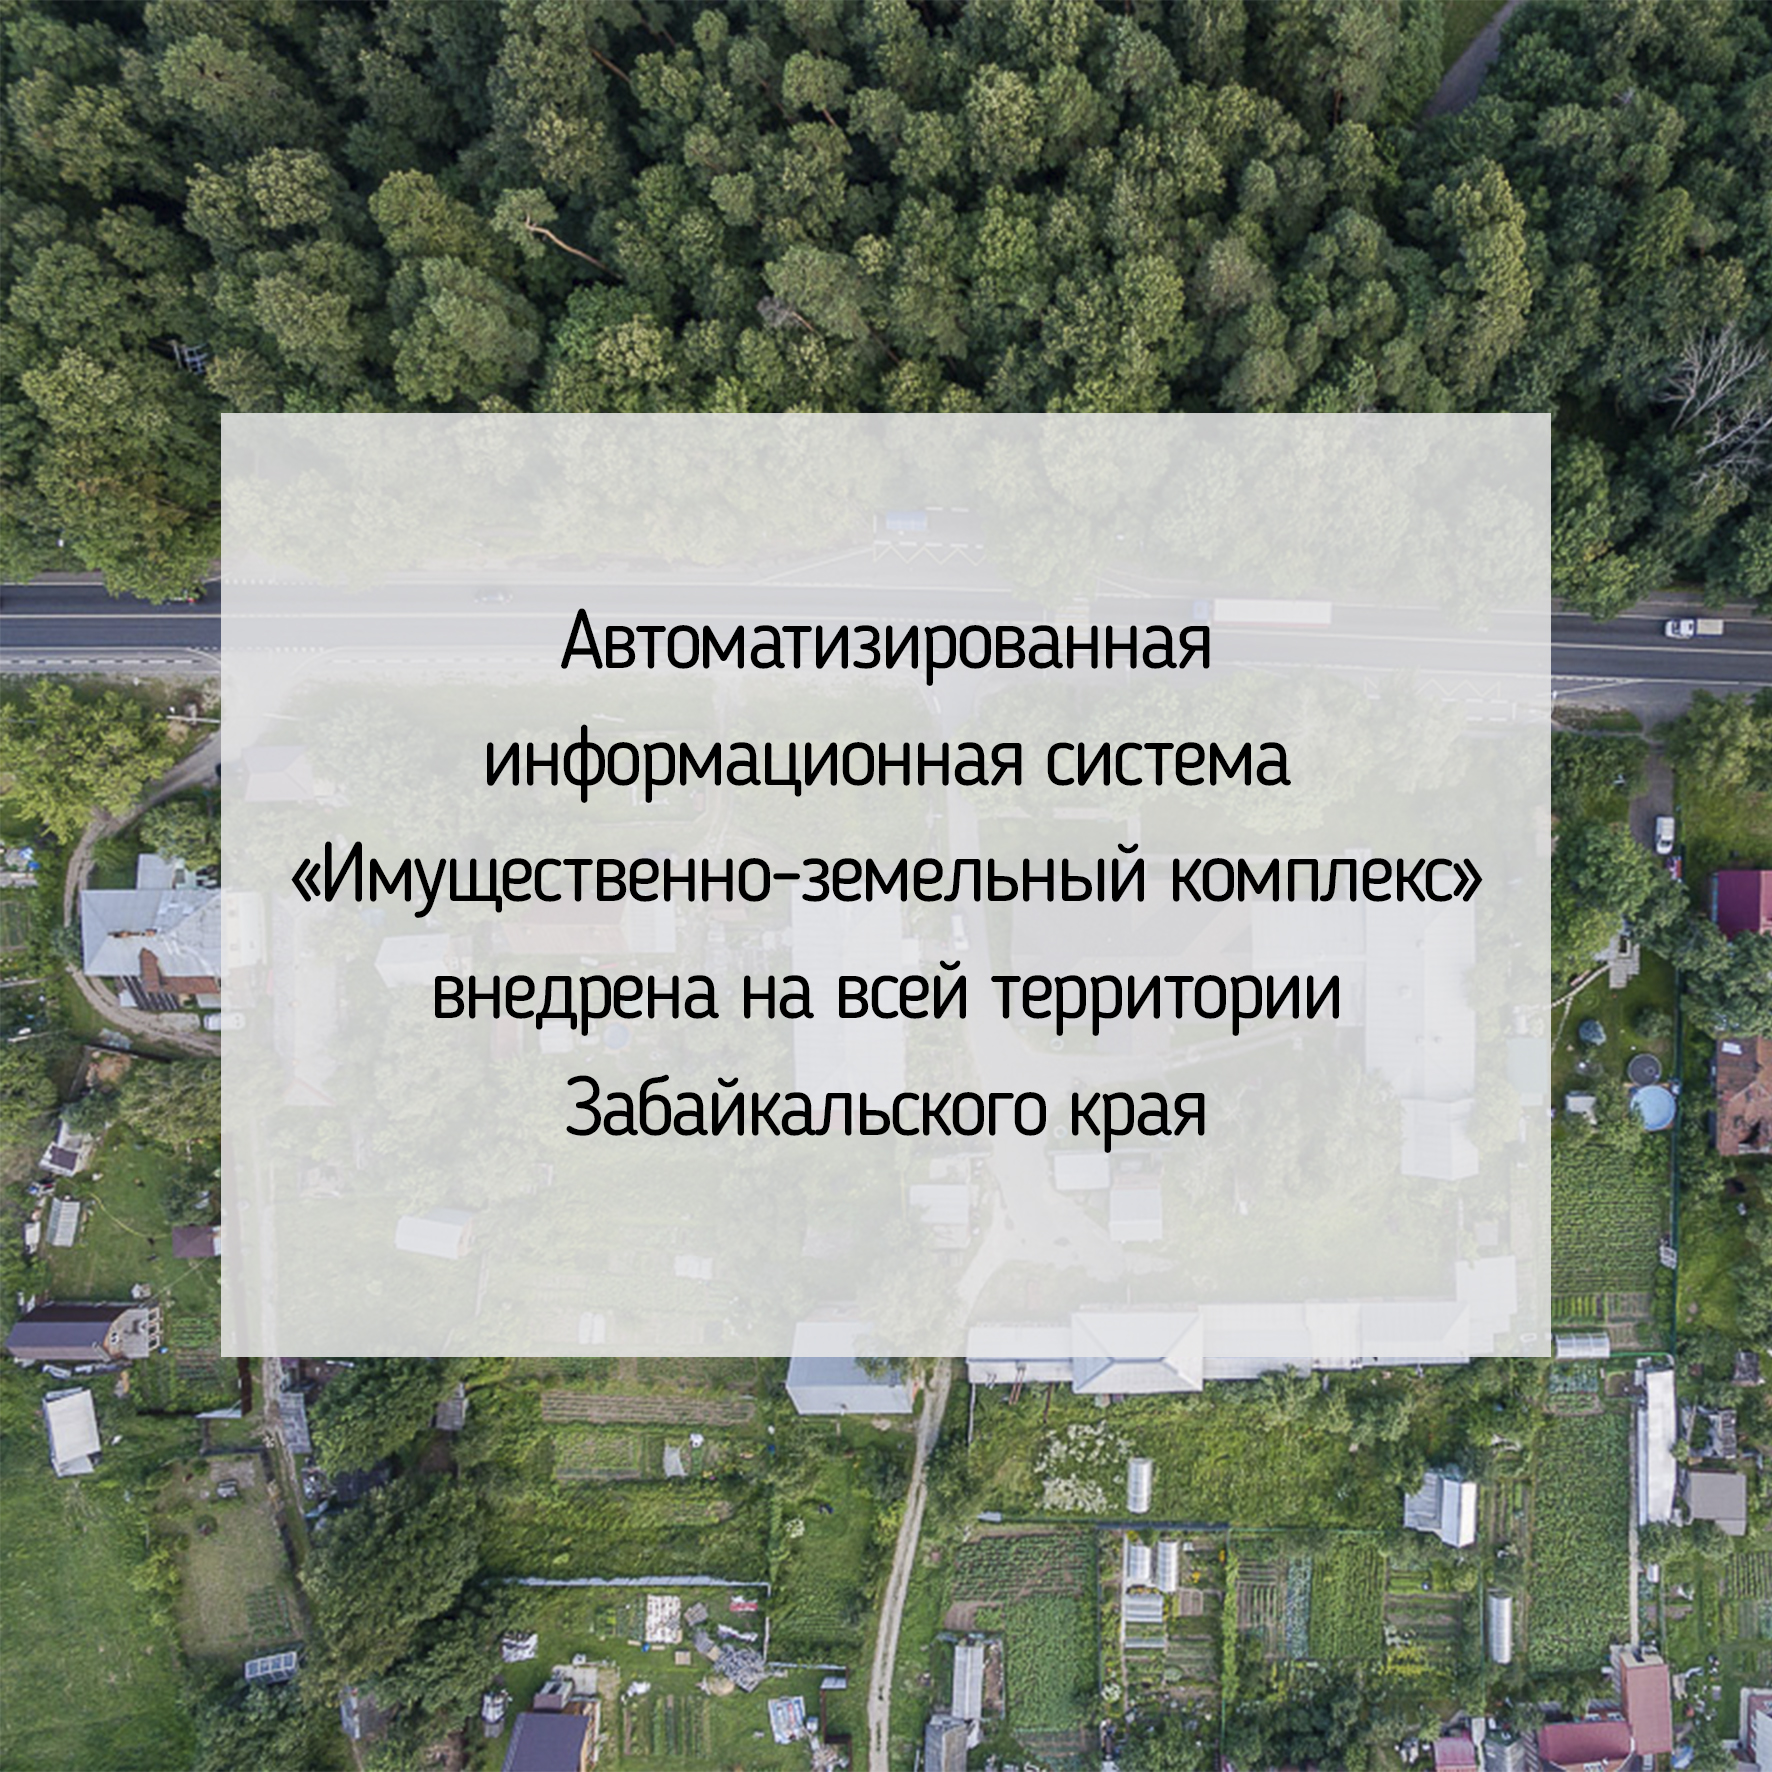 Департамент государственного имущества и земельных отношений забайкальского